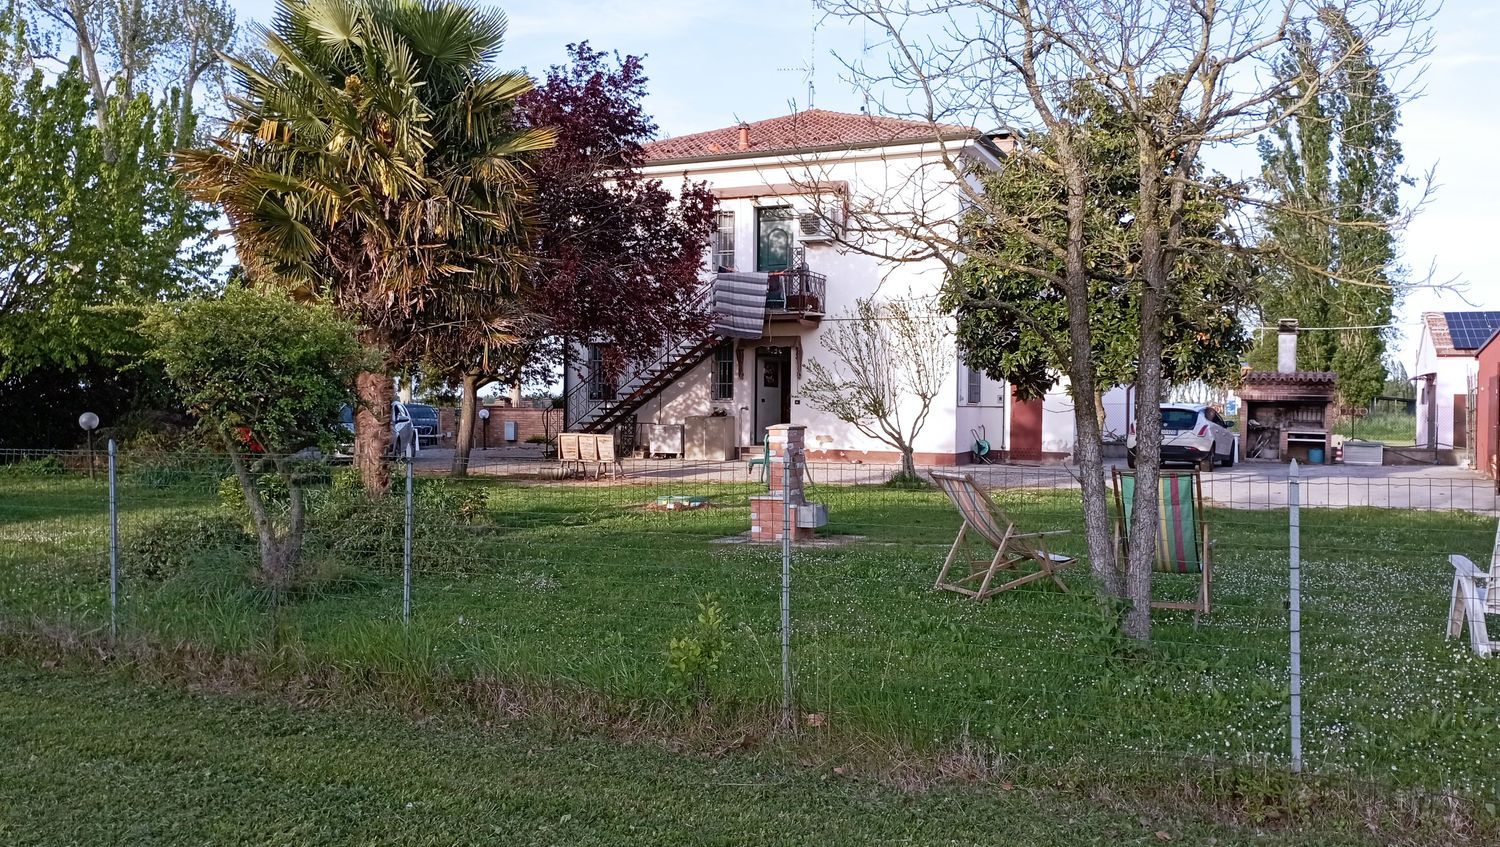 Villa Bifamiliare in vendita a Ferrara, 8 locali, prezzo € 270.000 | PortaleAgenzieImmobiliari.it